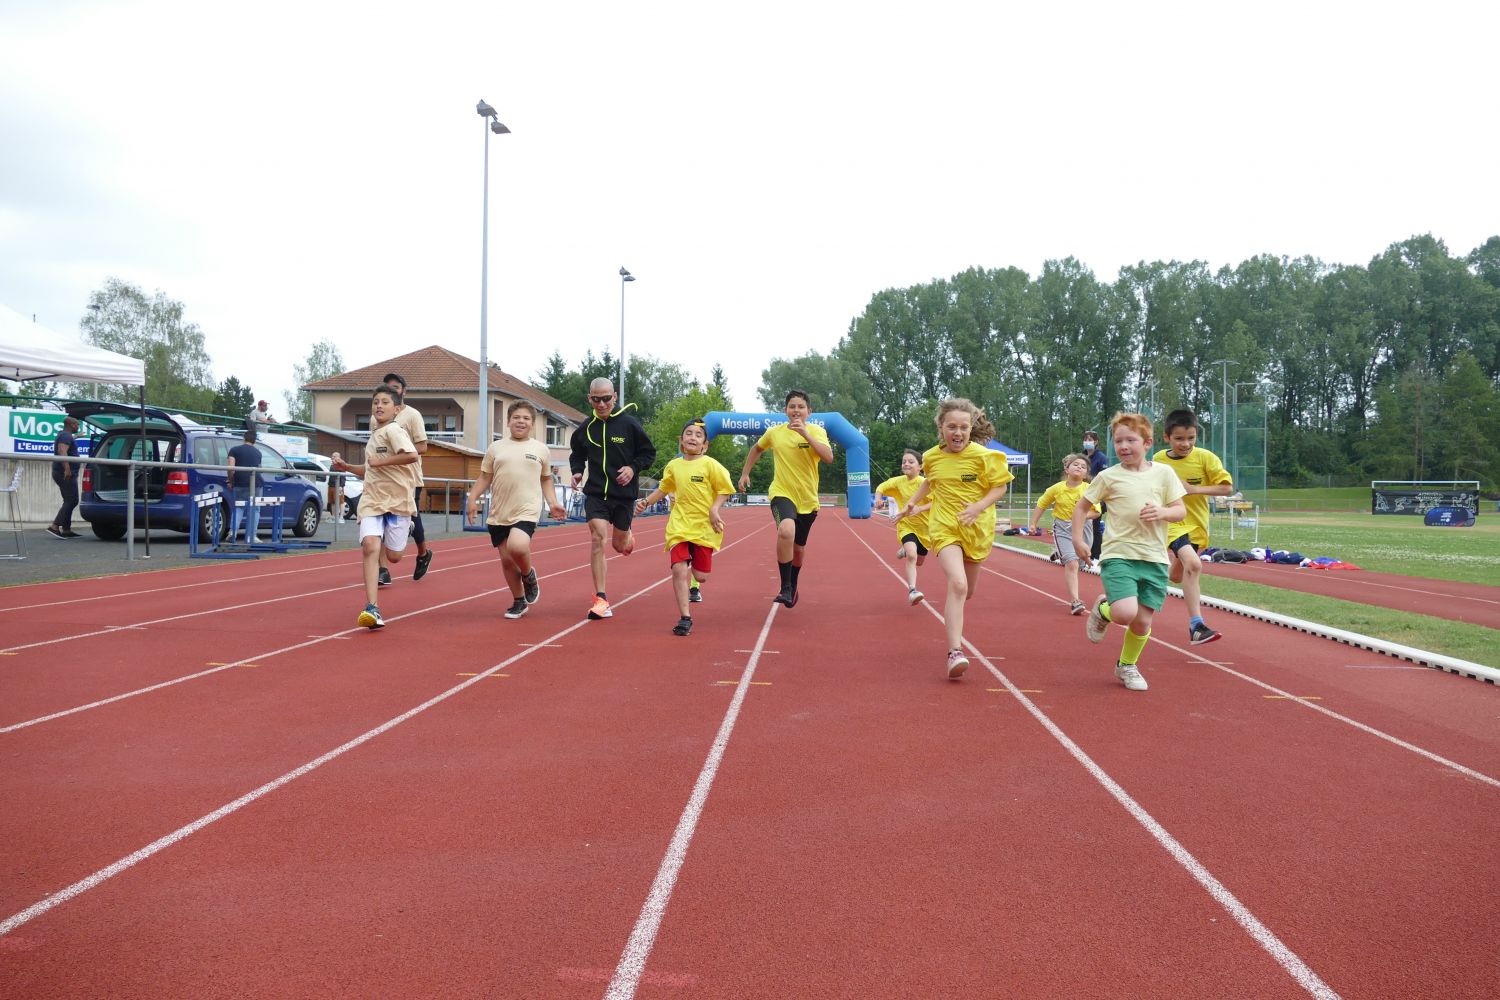 Journée olympique et paralympique : les Maisons d'Enfants à Caractère Social de Moselle se prêtent au jeu